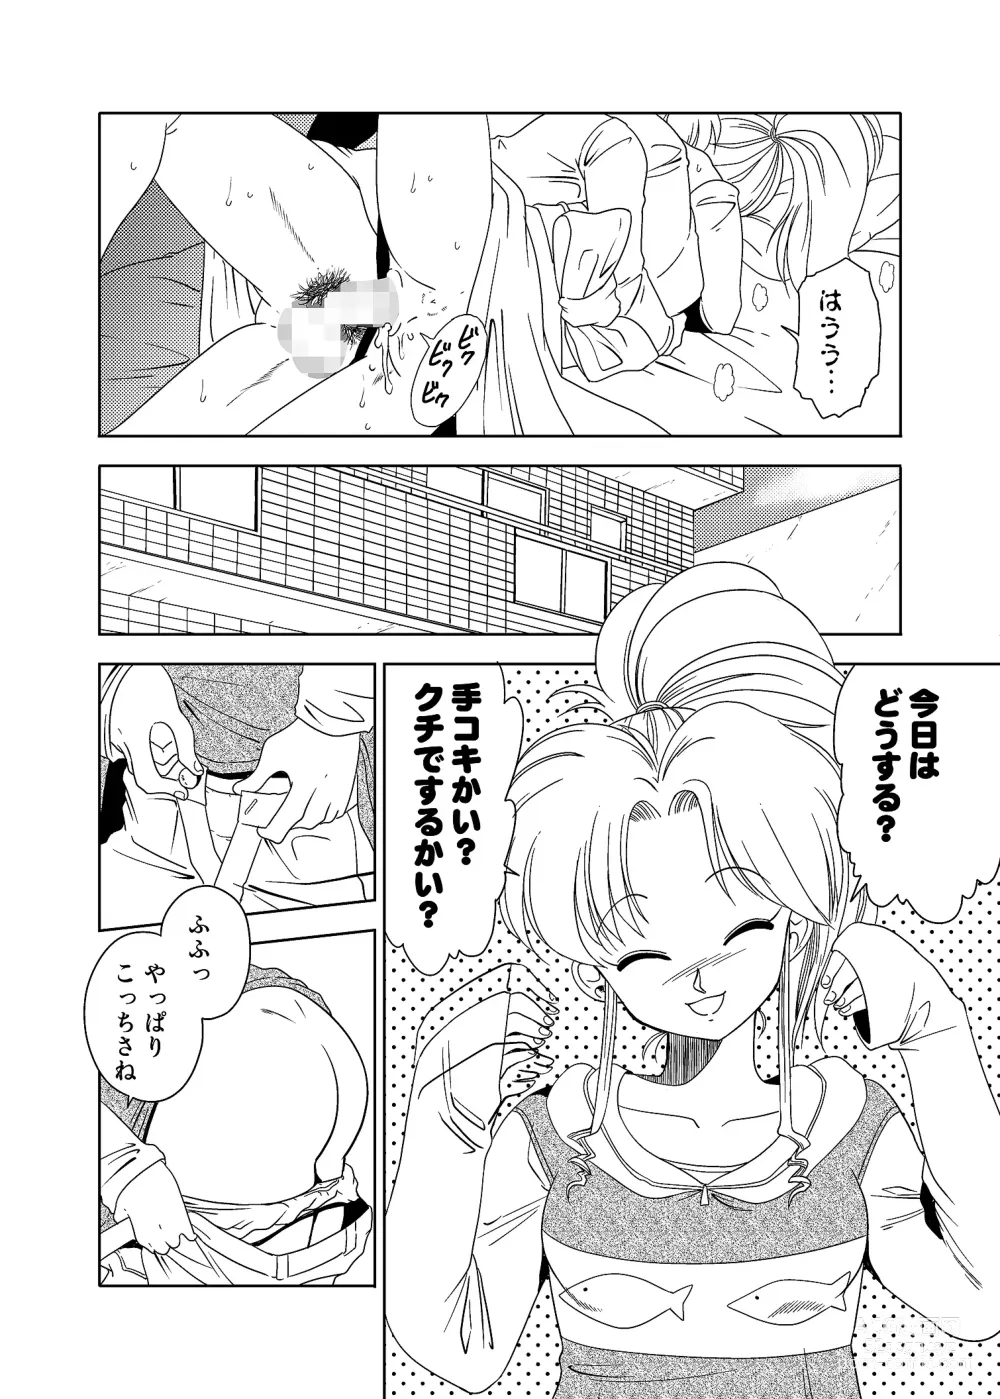 Page 14 of doujinshi Momo Botan